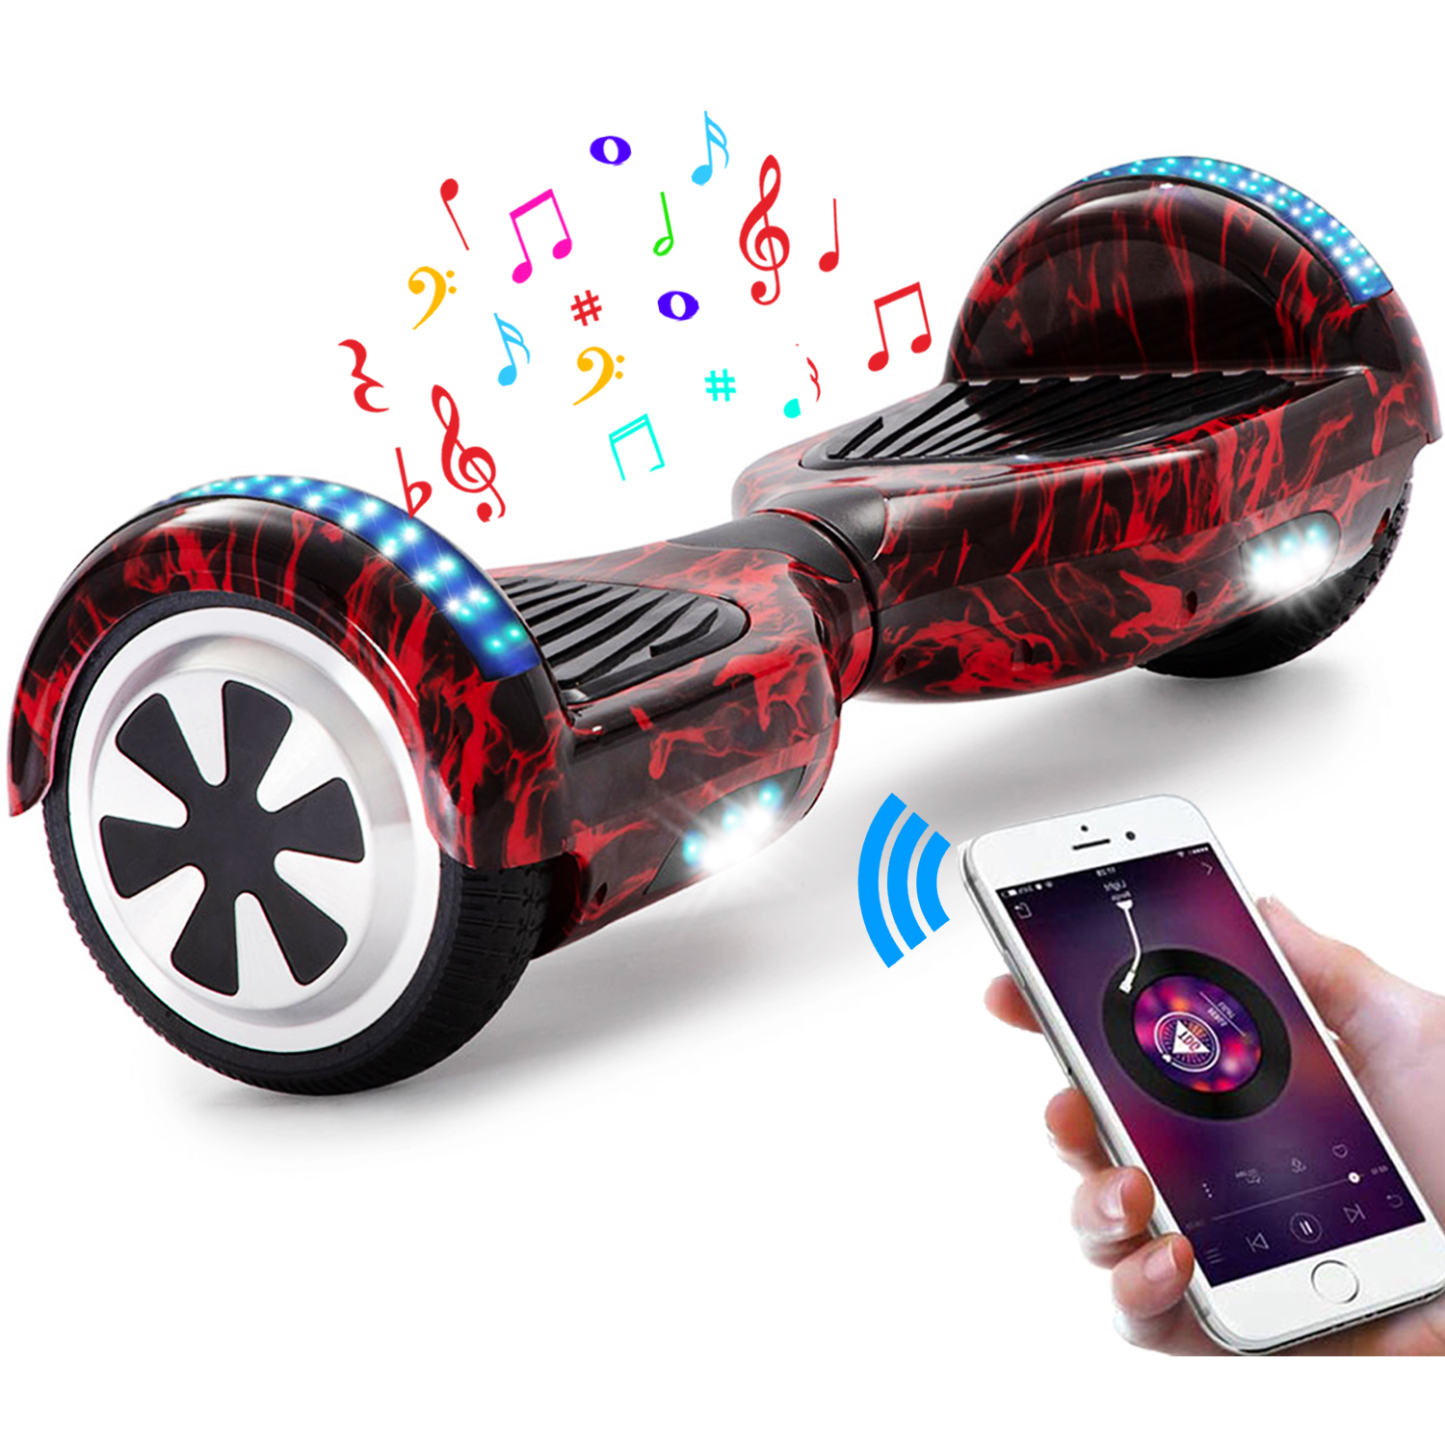 Neues 6,5" Flamme Hoverboard rot mit Bluetooth Musik Lautsprecher und LED Licht - 500W 12km/h